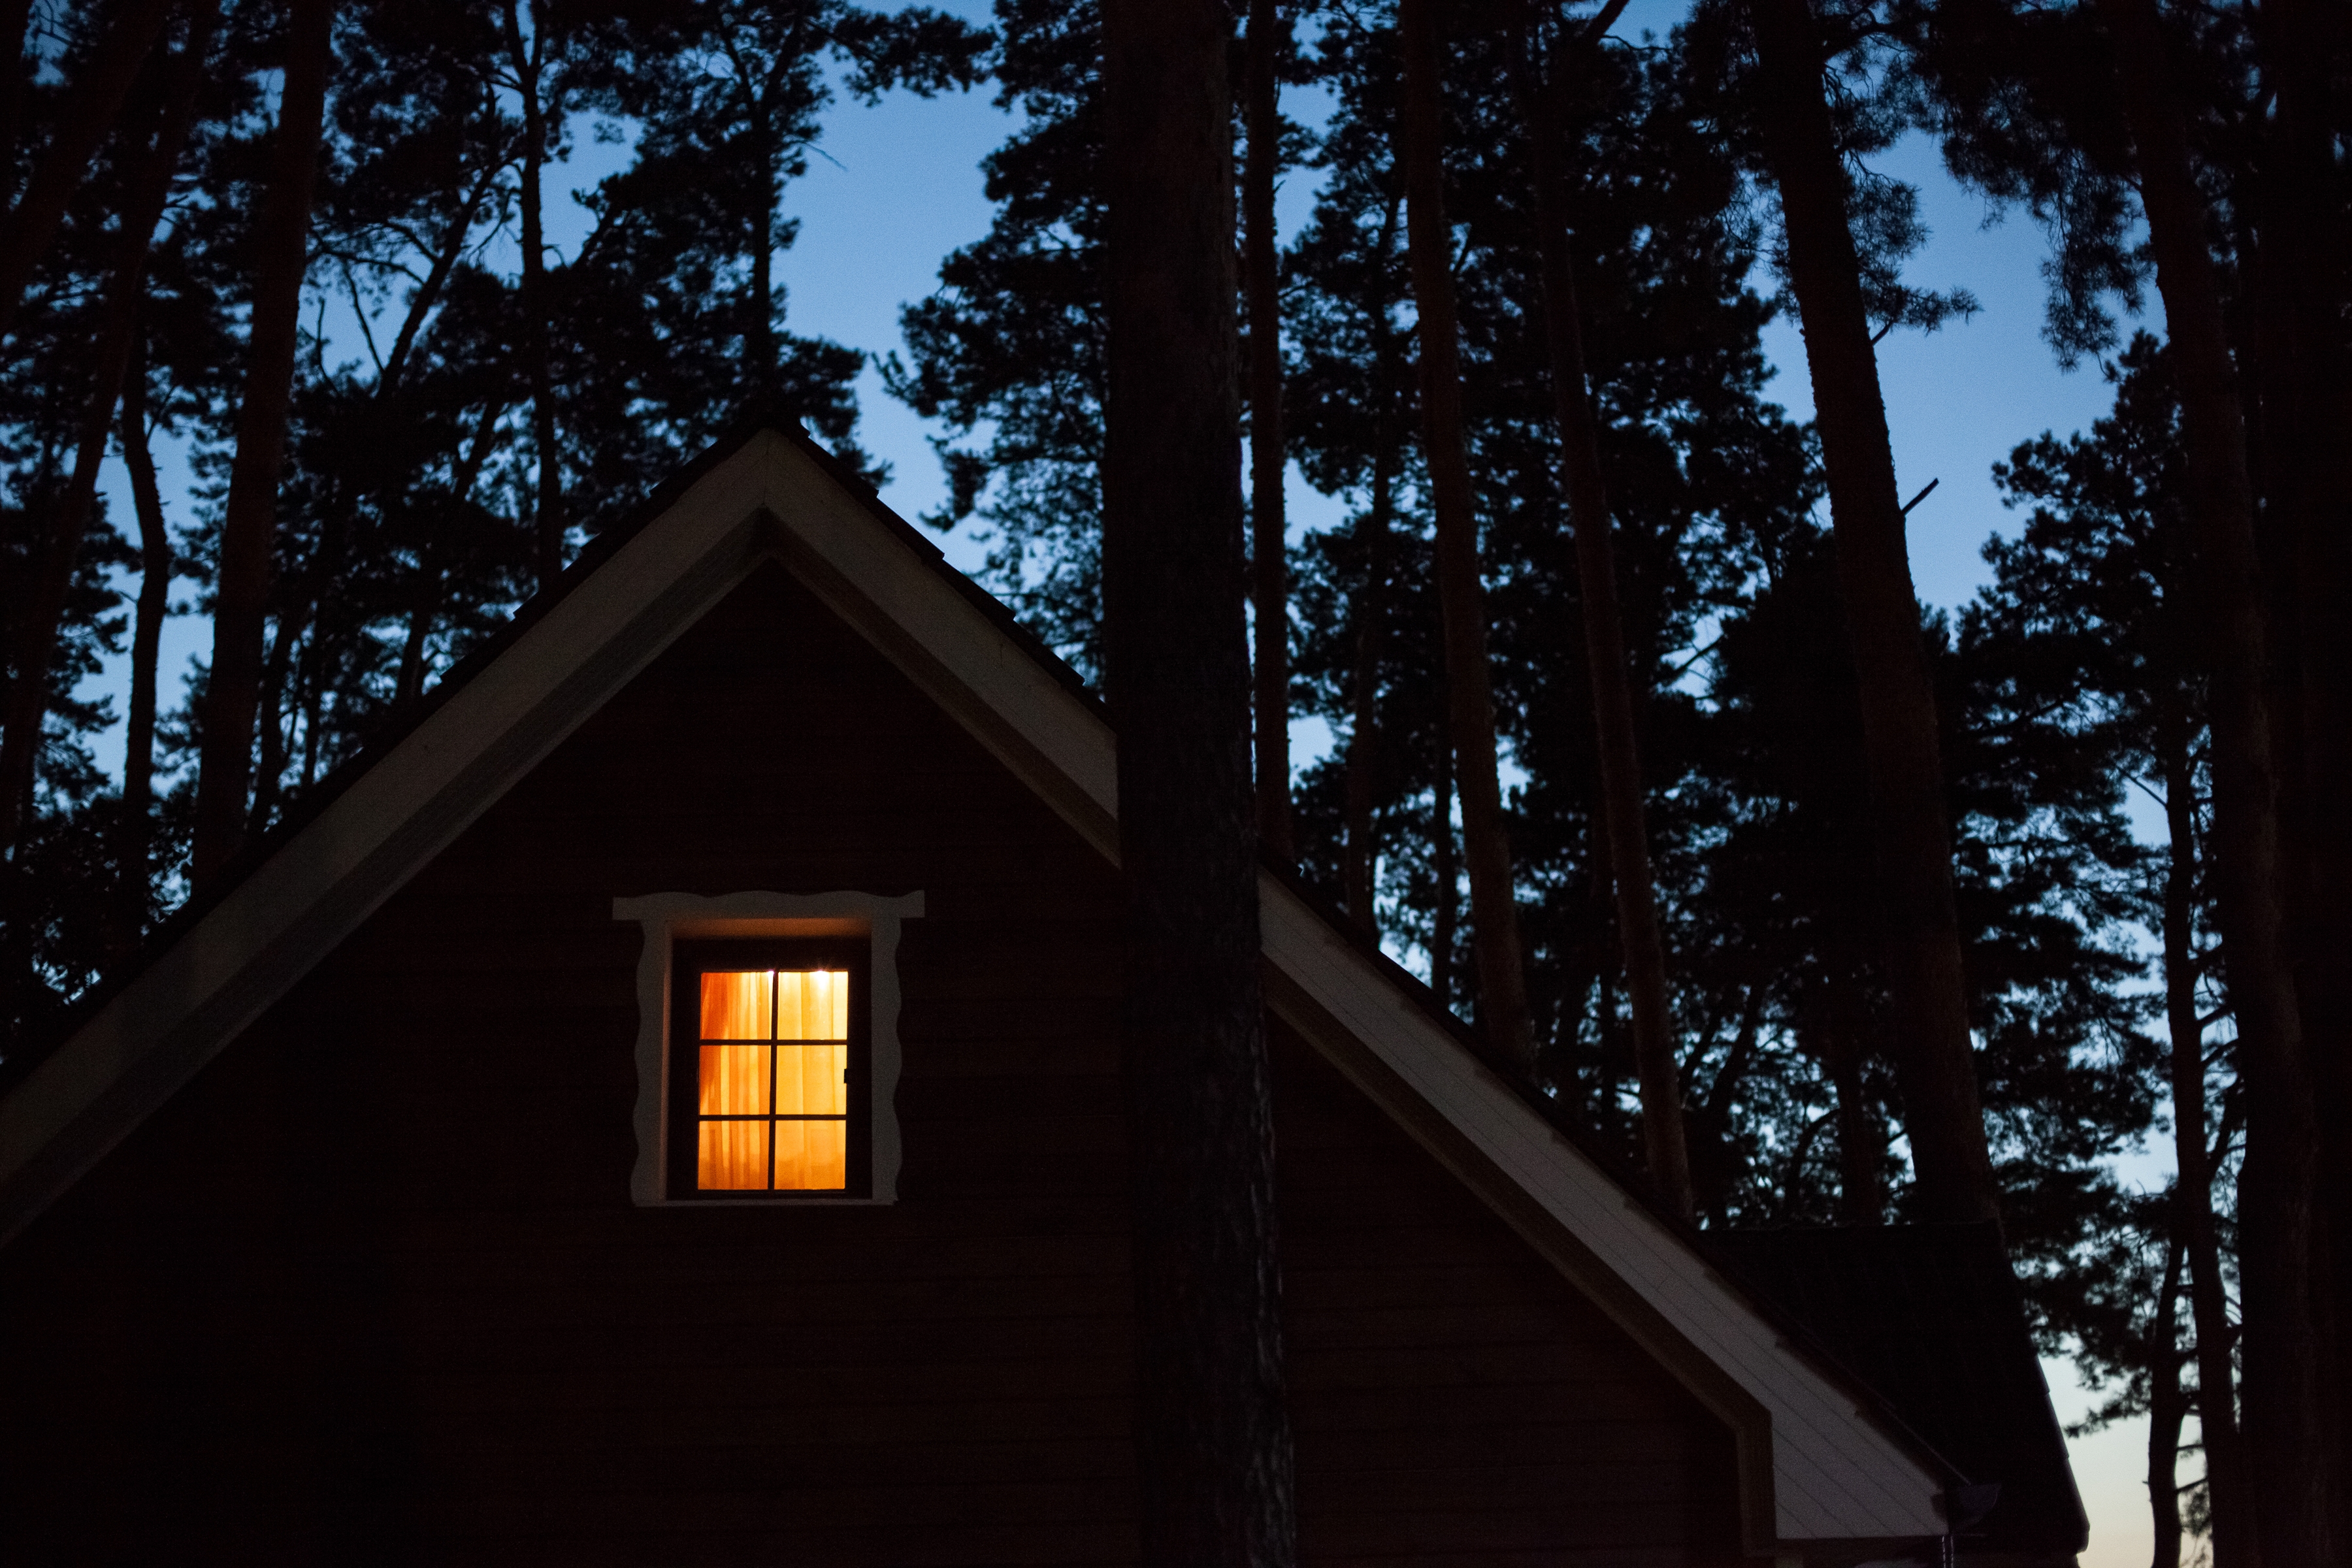 Warm light in the window | Source: Shutterstock